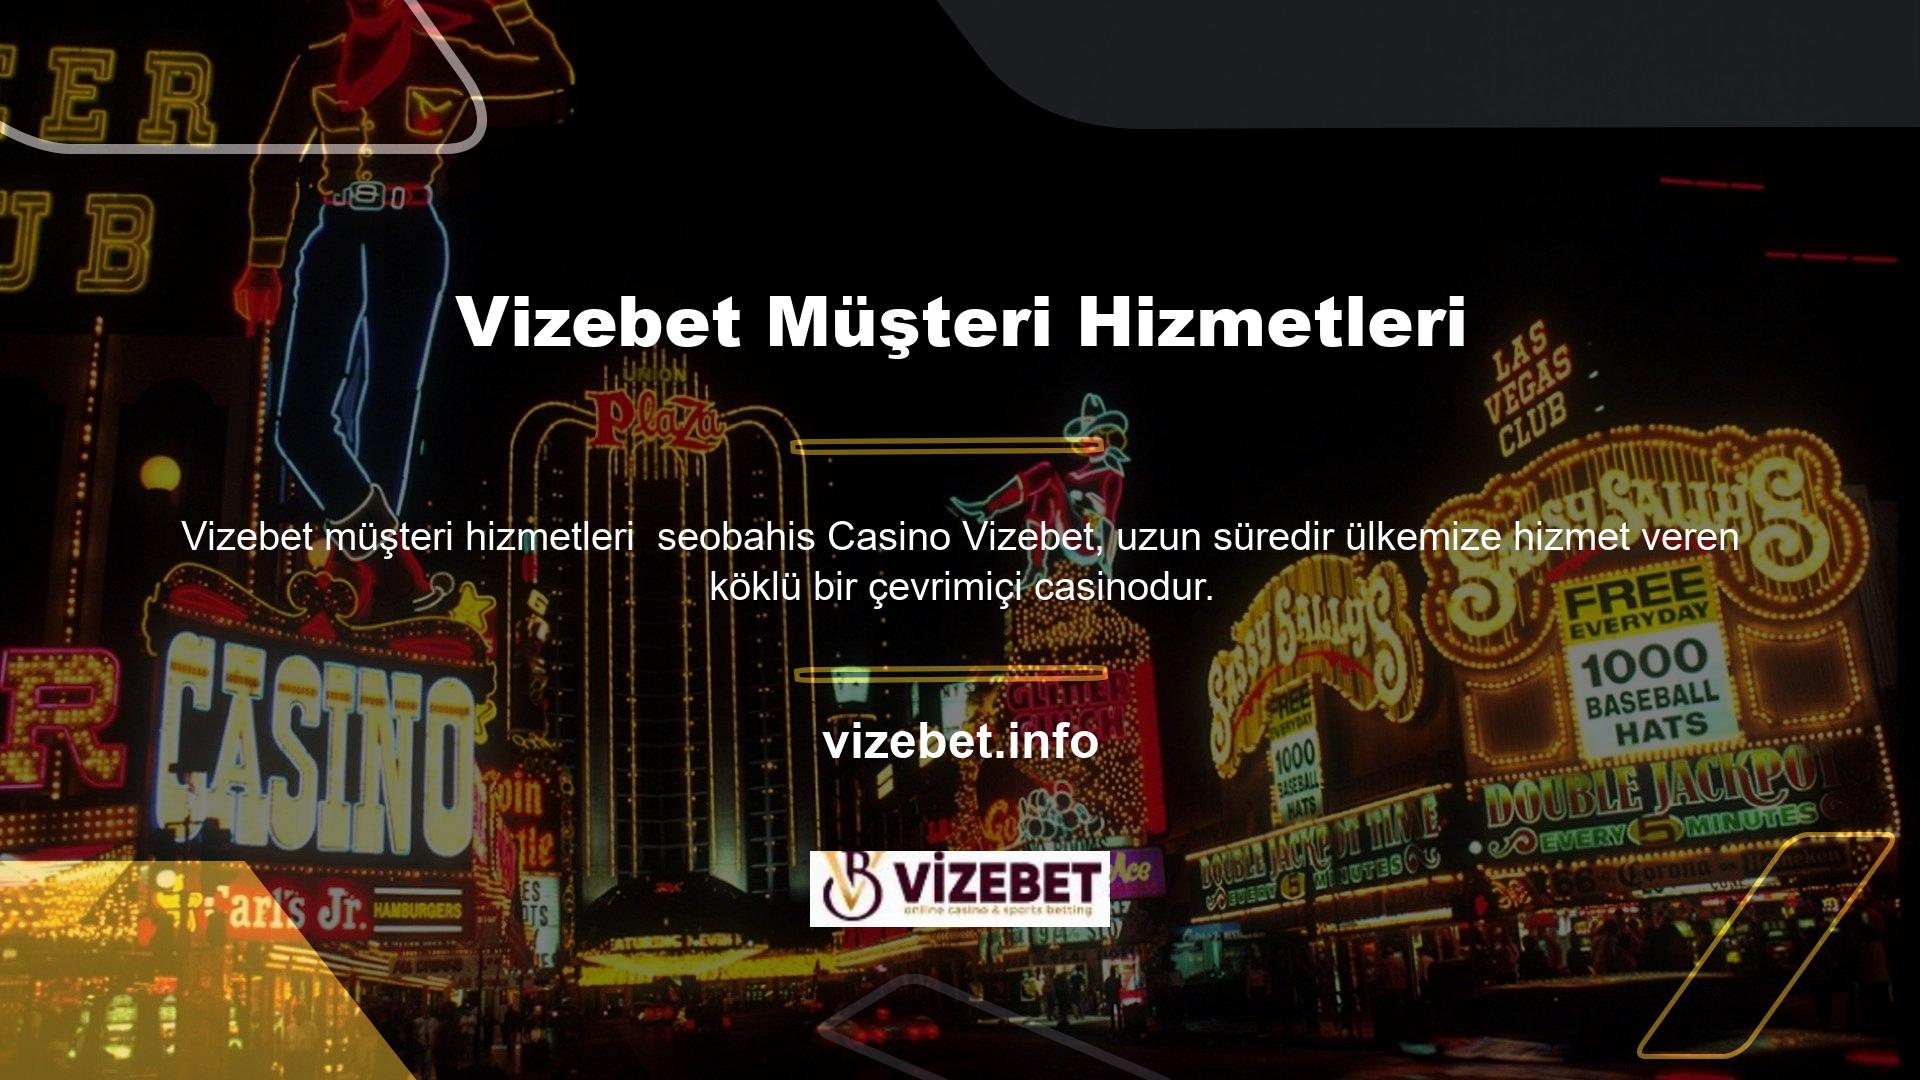 İsmi Korece bahis anlamına gelen bir şirket olan Vizebet, ülkemizde de büyük beğeni toplayan casino oyun sektöründe önemli başarılara imza attı